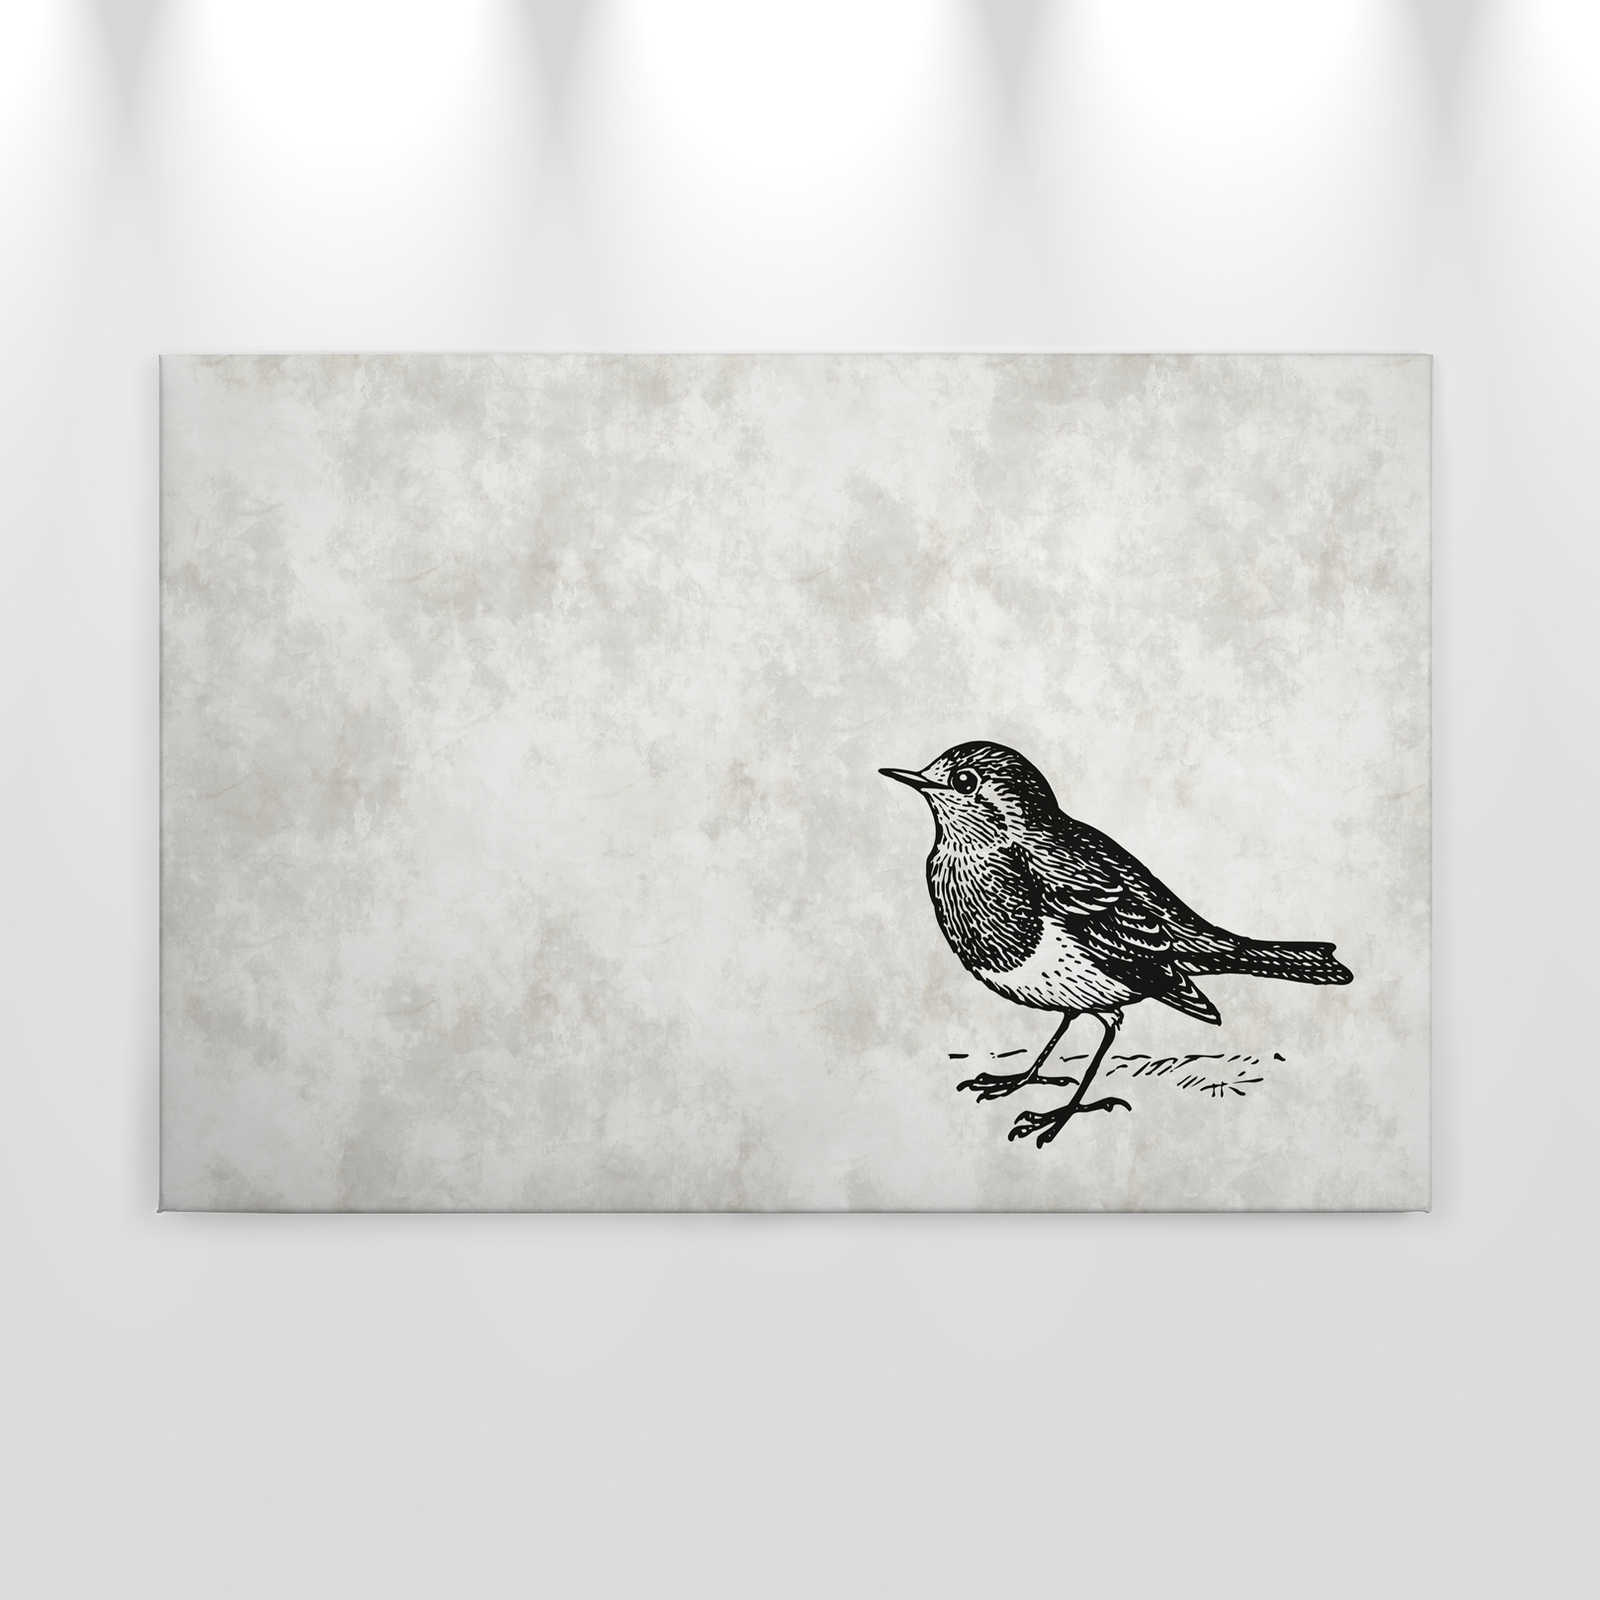             Lienzo en blanco y negro con pájaro - 0,90 m x 0,60 m
        